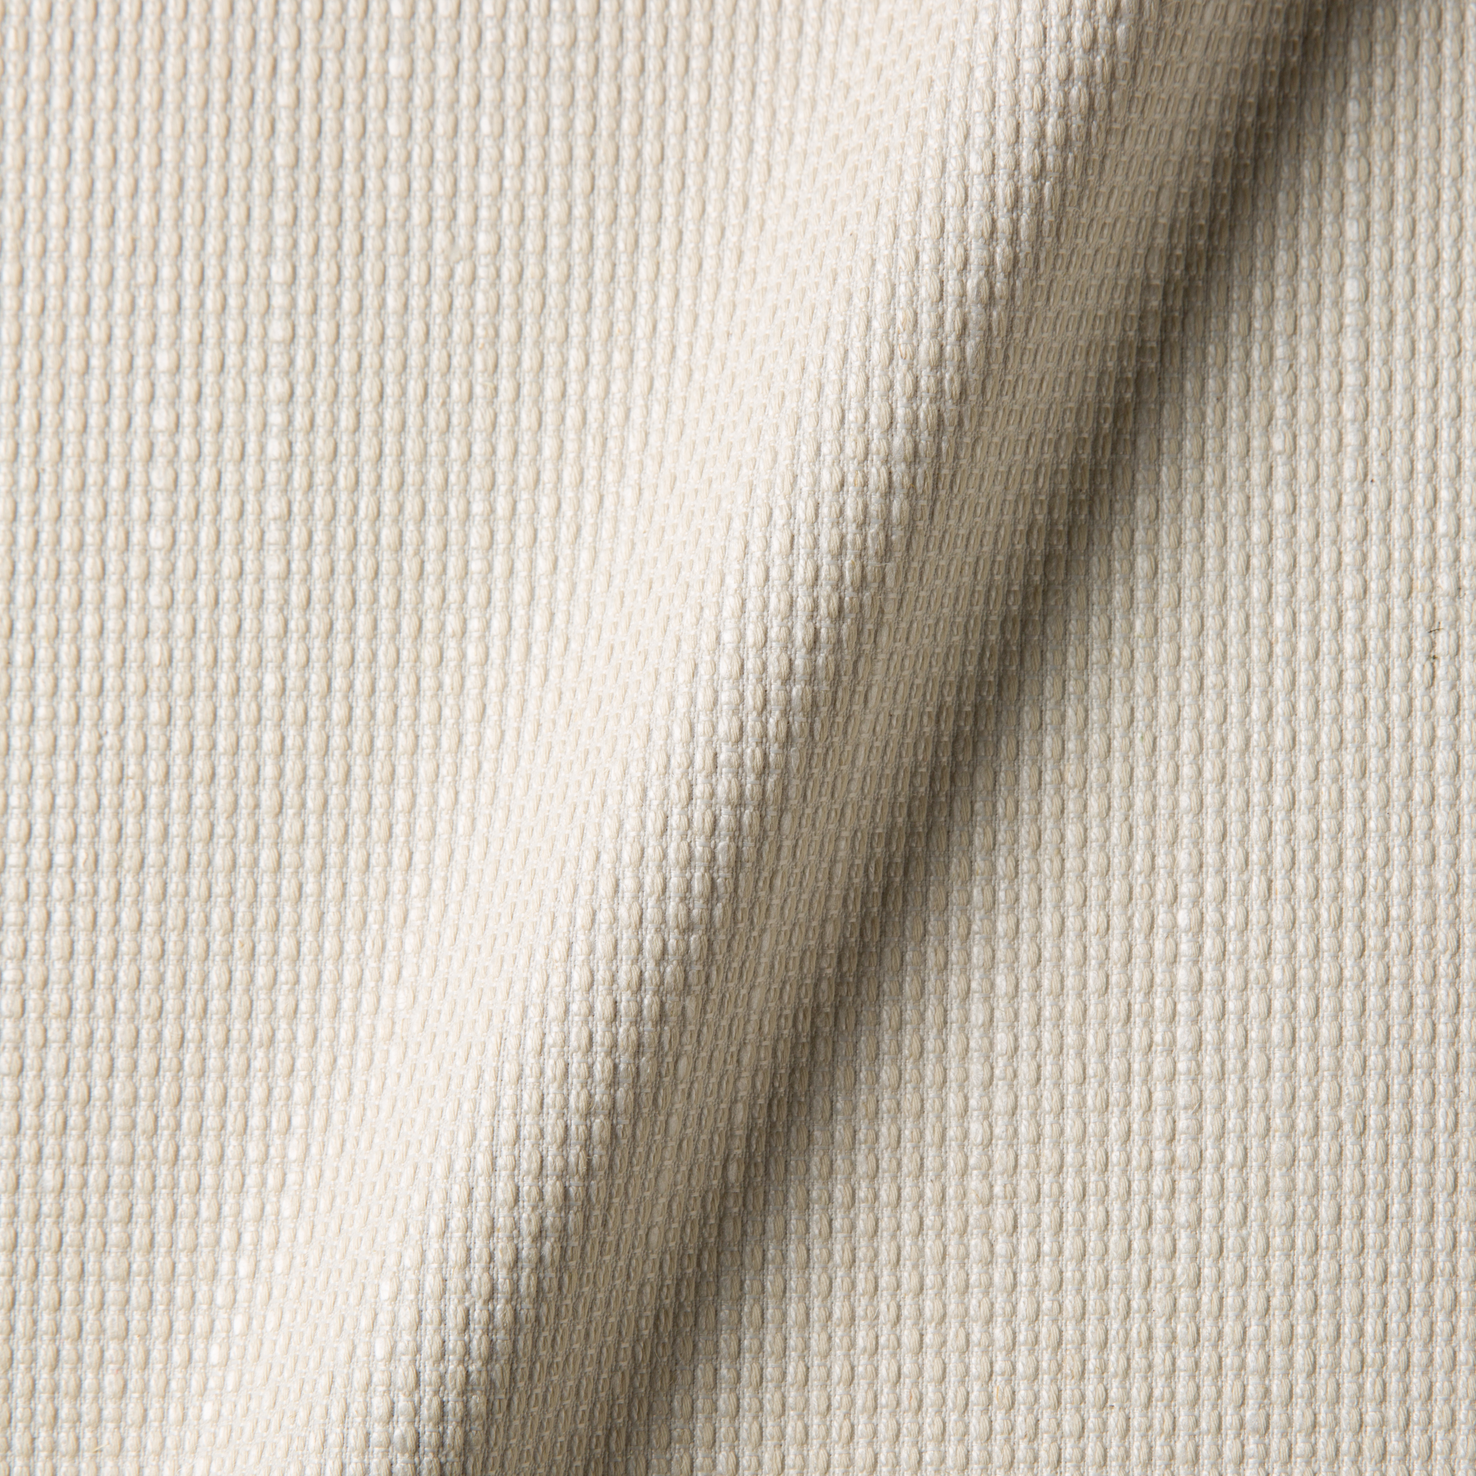 Fabric sample Macchedil Grezzo Off White